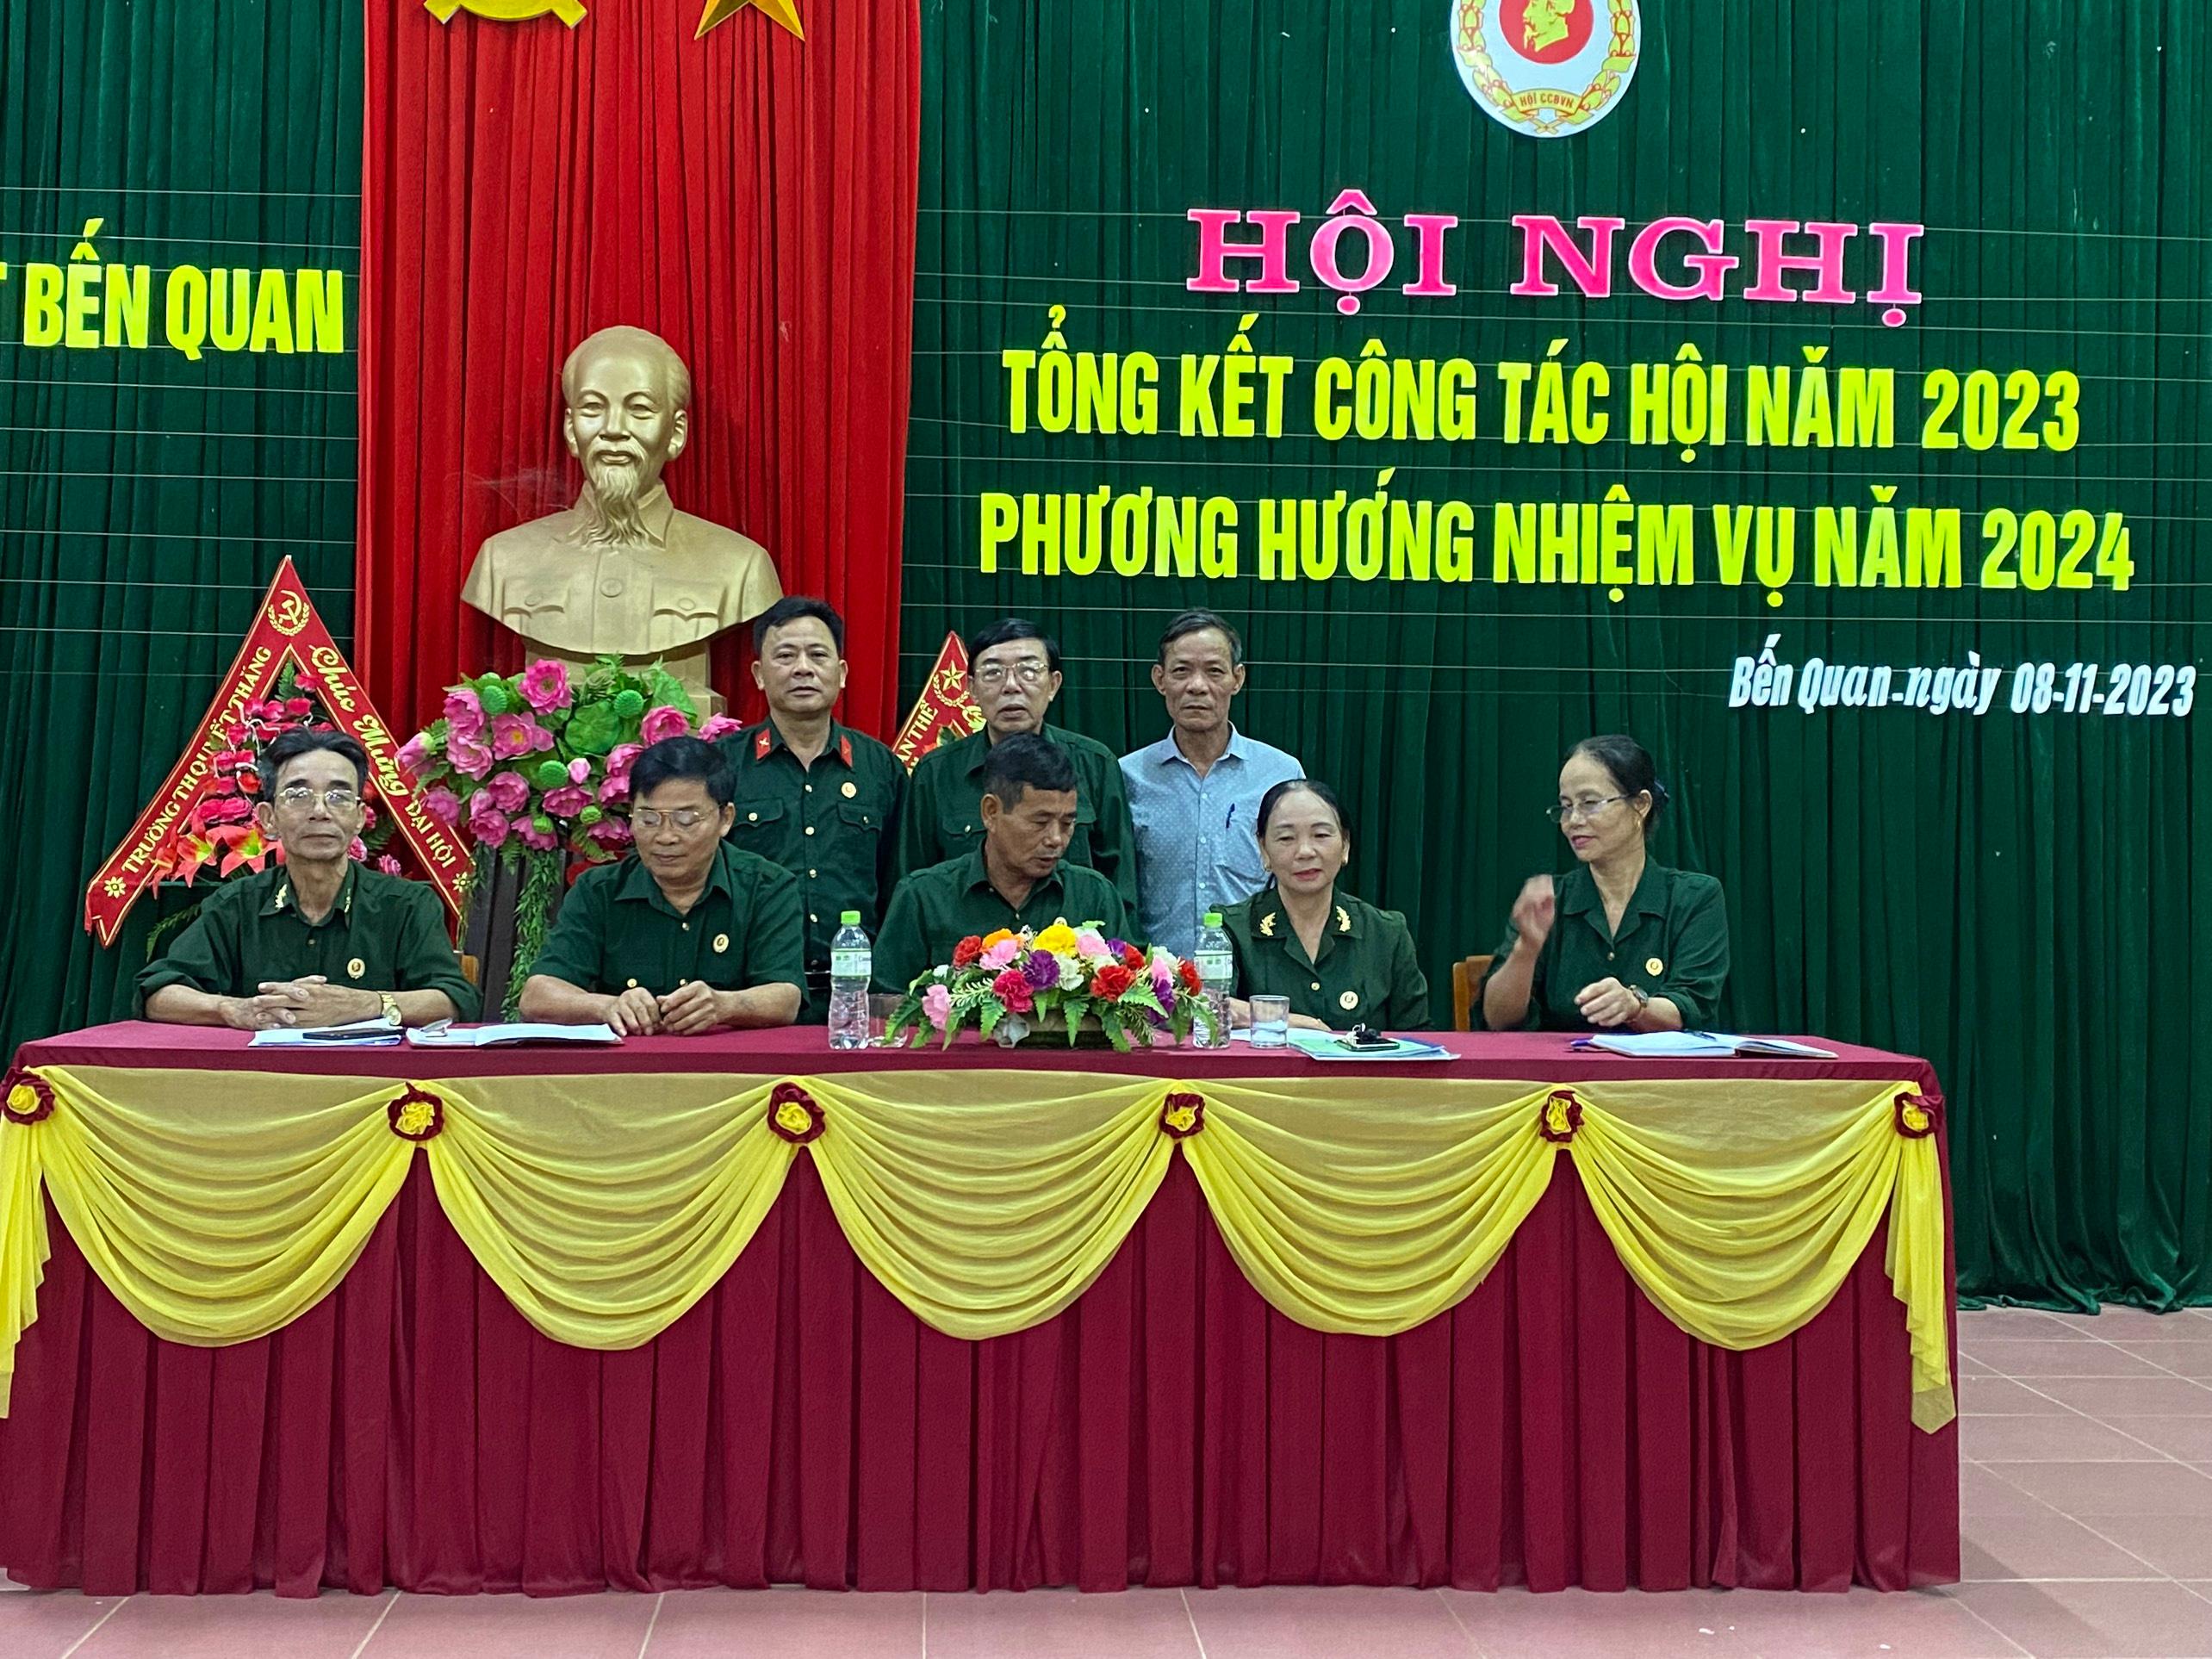 Hội Cựu chiến binh TT BẾN QUAN: Tổ chức Hội nghị tổng kết công tác Hội năm 2023.